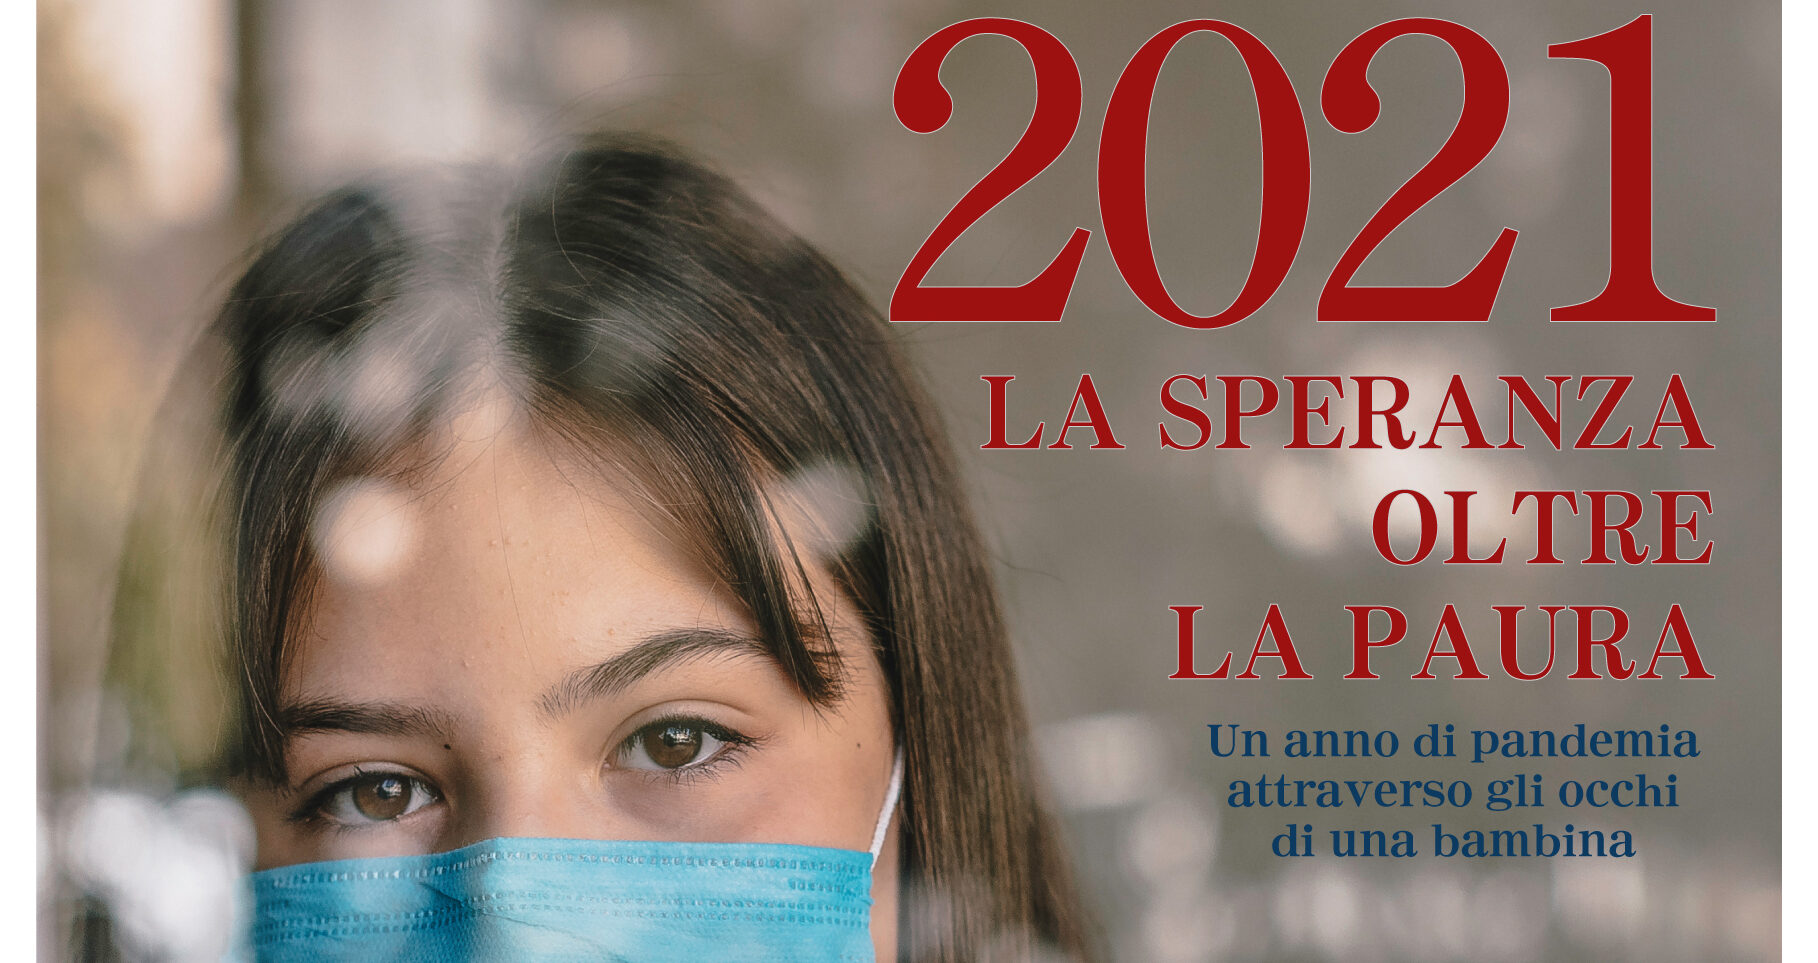 Il Salotto Letterario Donna 2000&Amici di Ferrandina ospita  lo scrittore Antonio Baldinetti per la presentazione di “2021 La speranza oltre la paura”